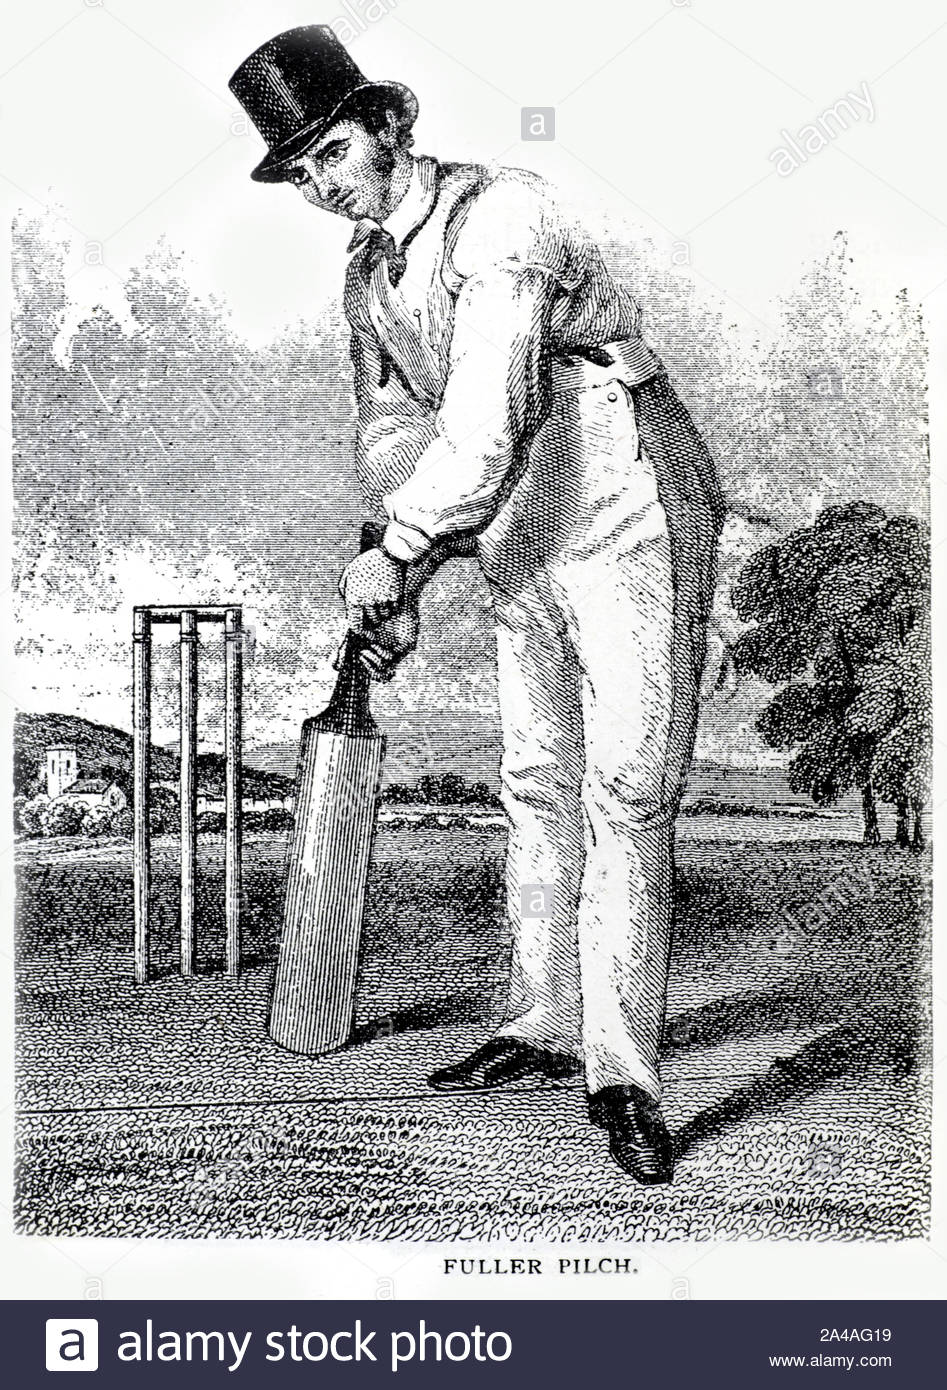 Fuller Pilch portrait, 1803 – 1870, était un cricketer anglais de première classe, considéré comme le plus grand batteur de son époque, illustration du XIXe siècle Banque D'Images